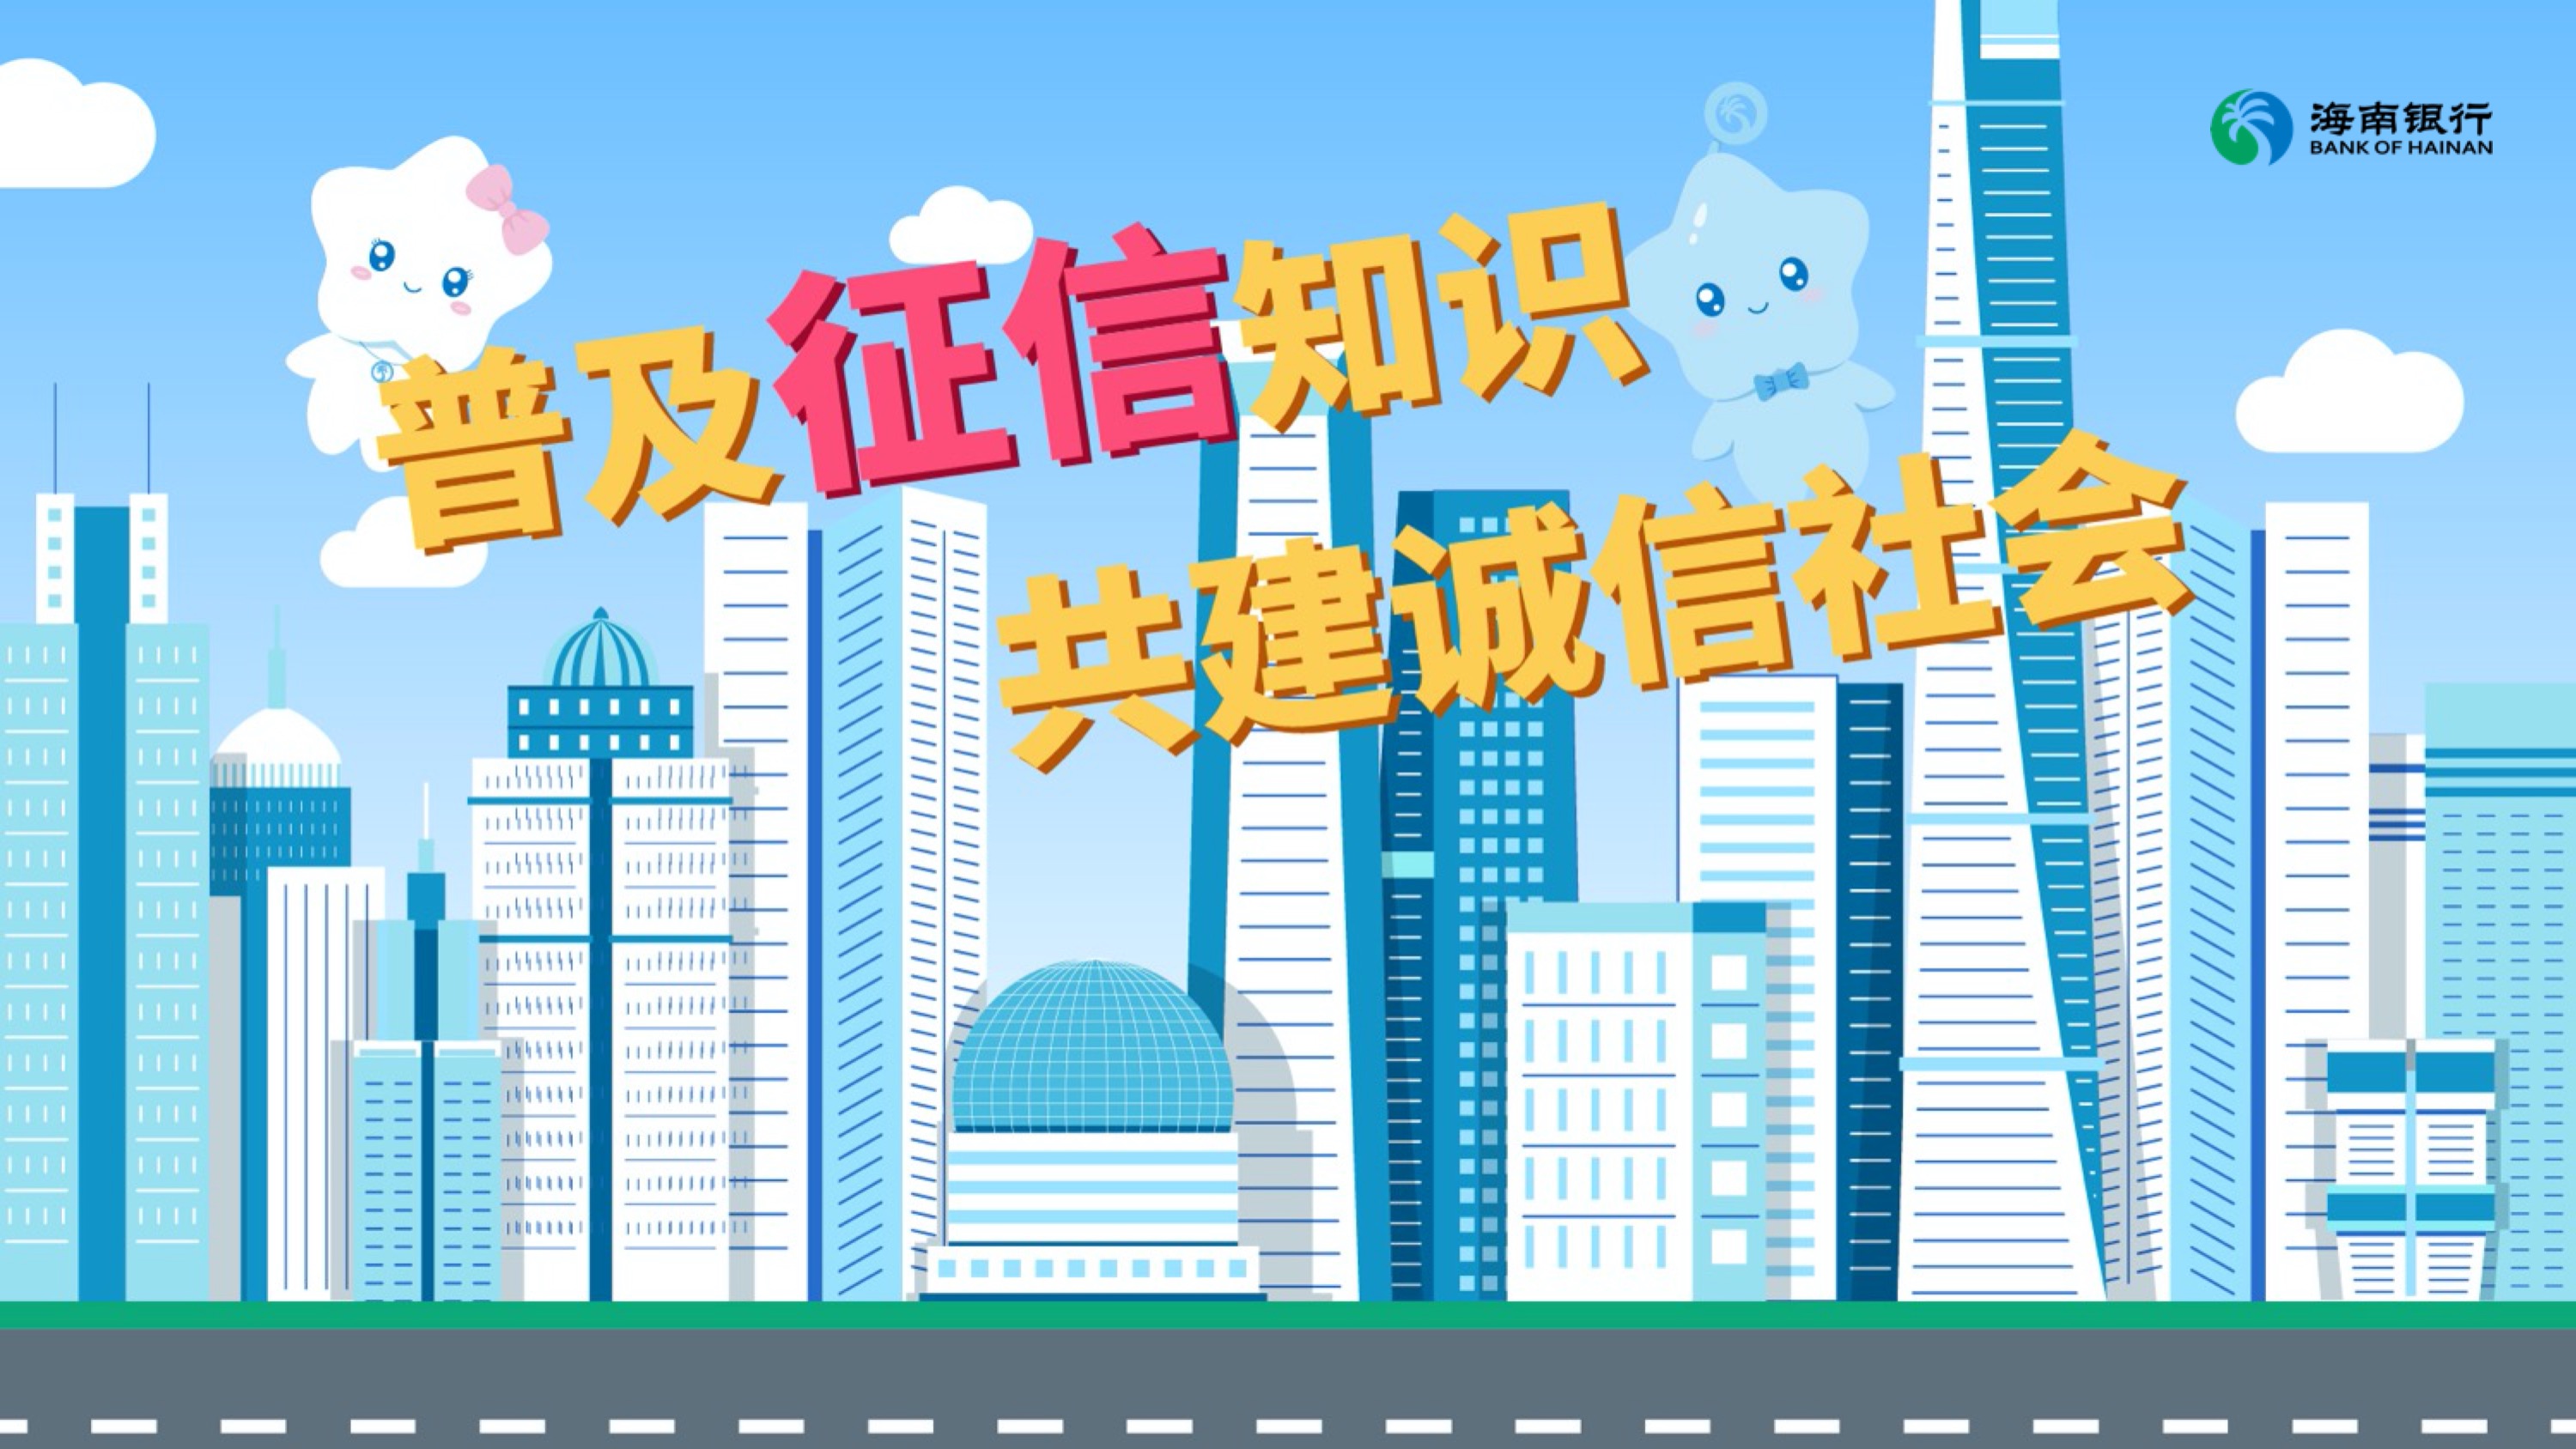 重庆海南银行征信宣传MG动画片